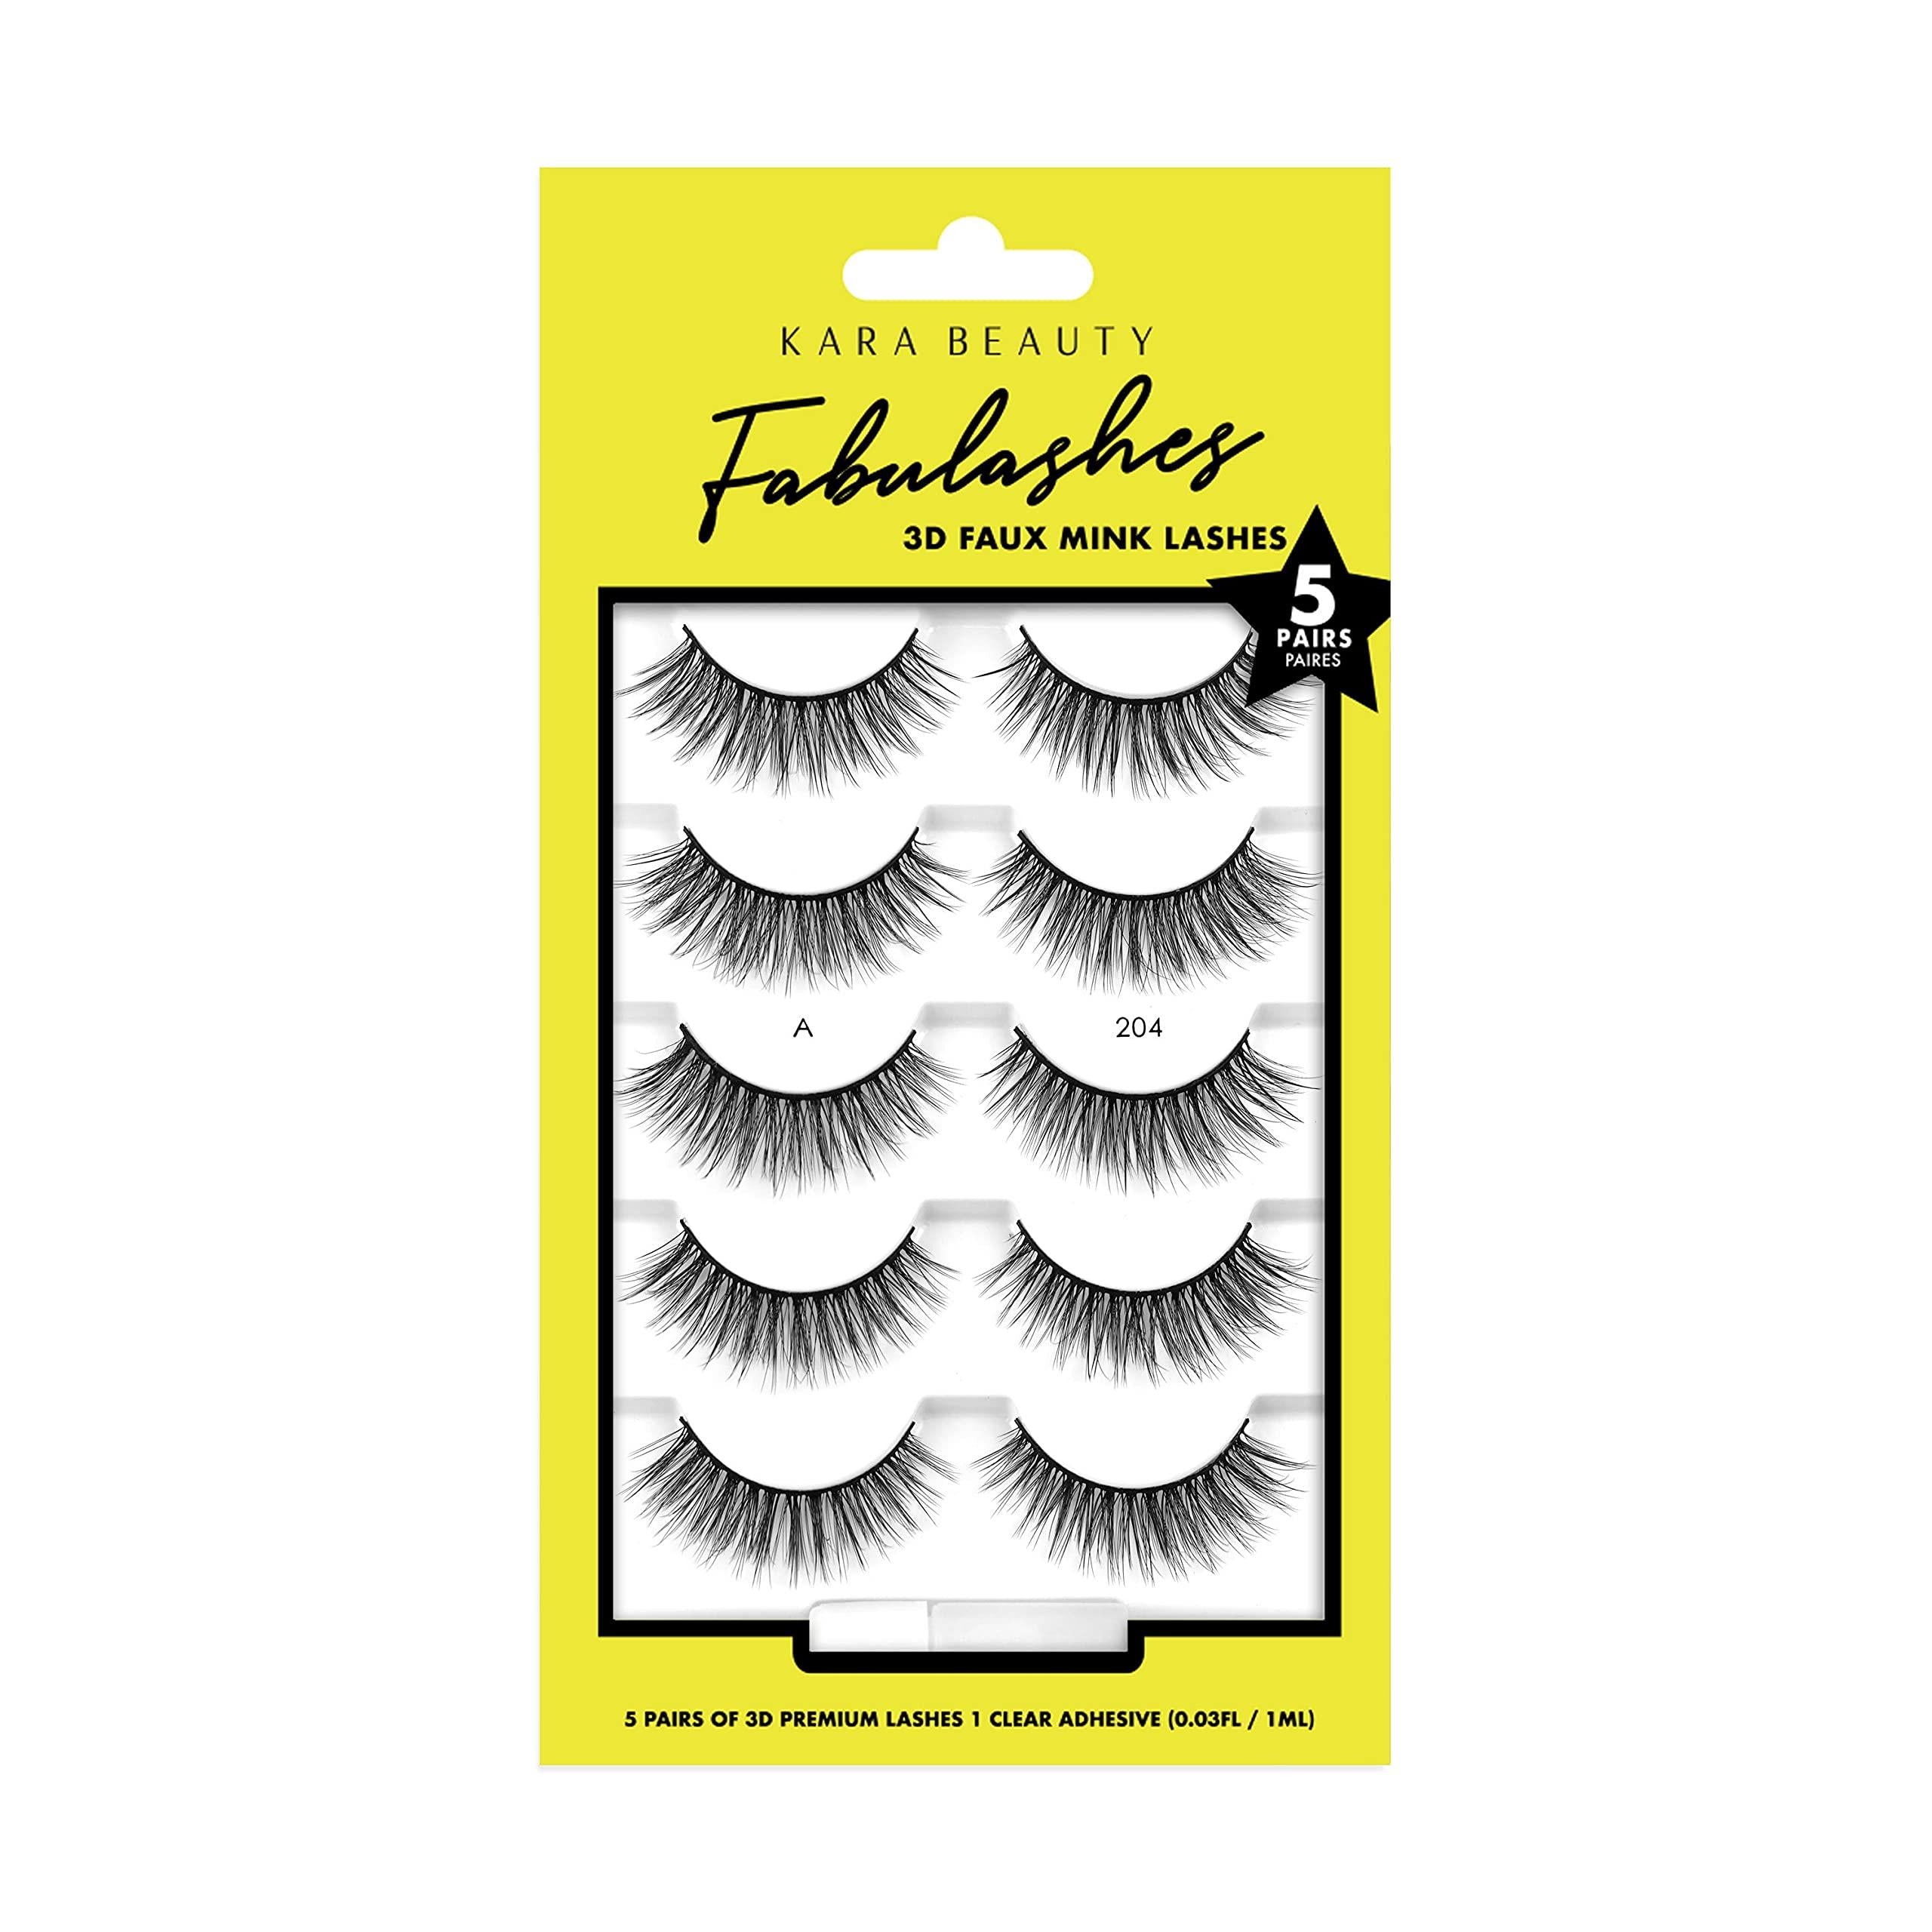 KARA BEAUTY FABULASHES 5 IDENTICAL PAIRS Multi-pack 3D Faux Mink False Eyelashes - Style KA5204